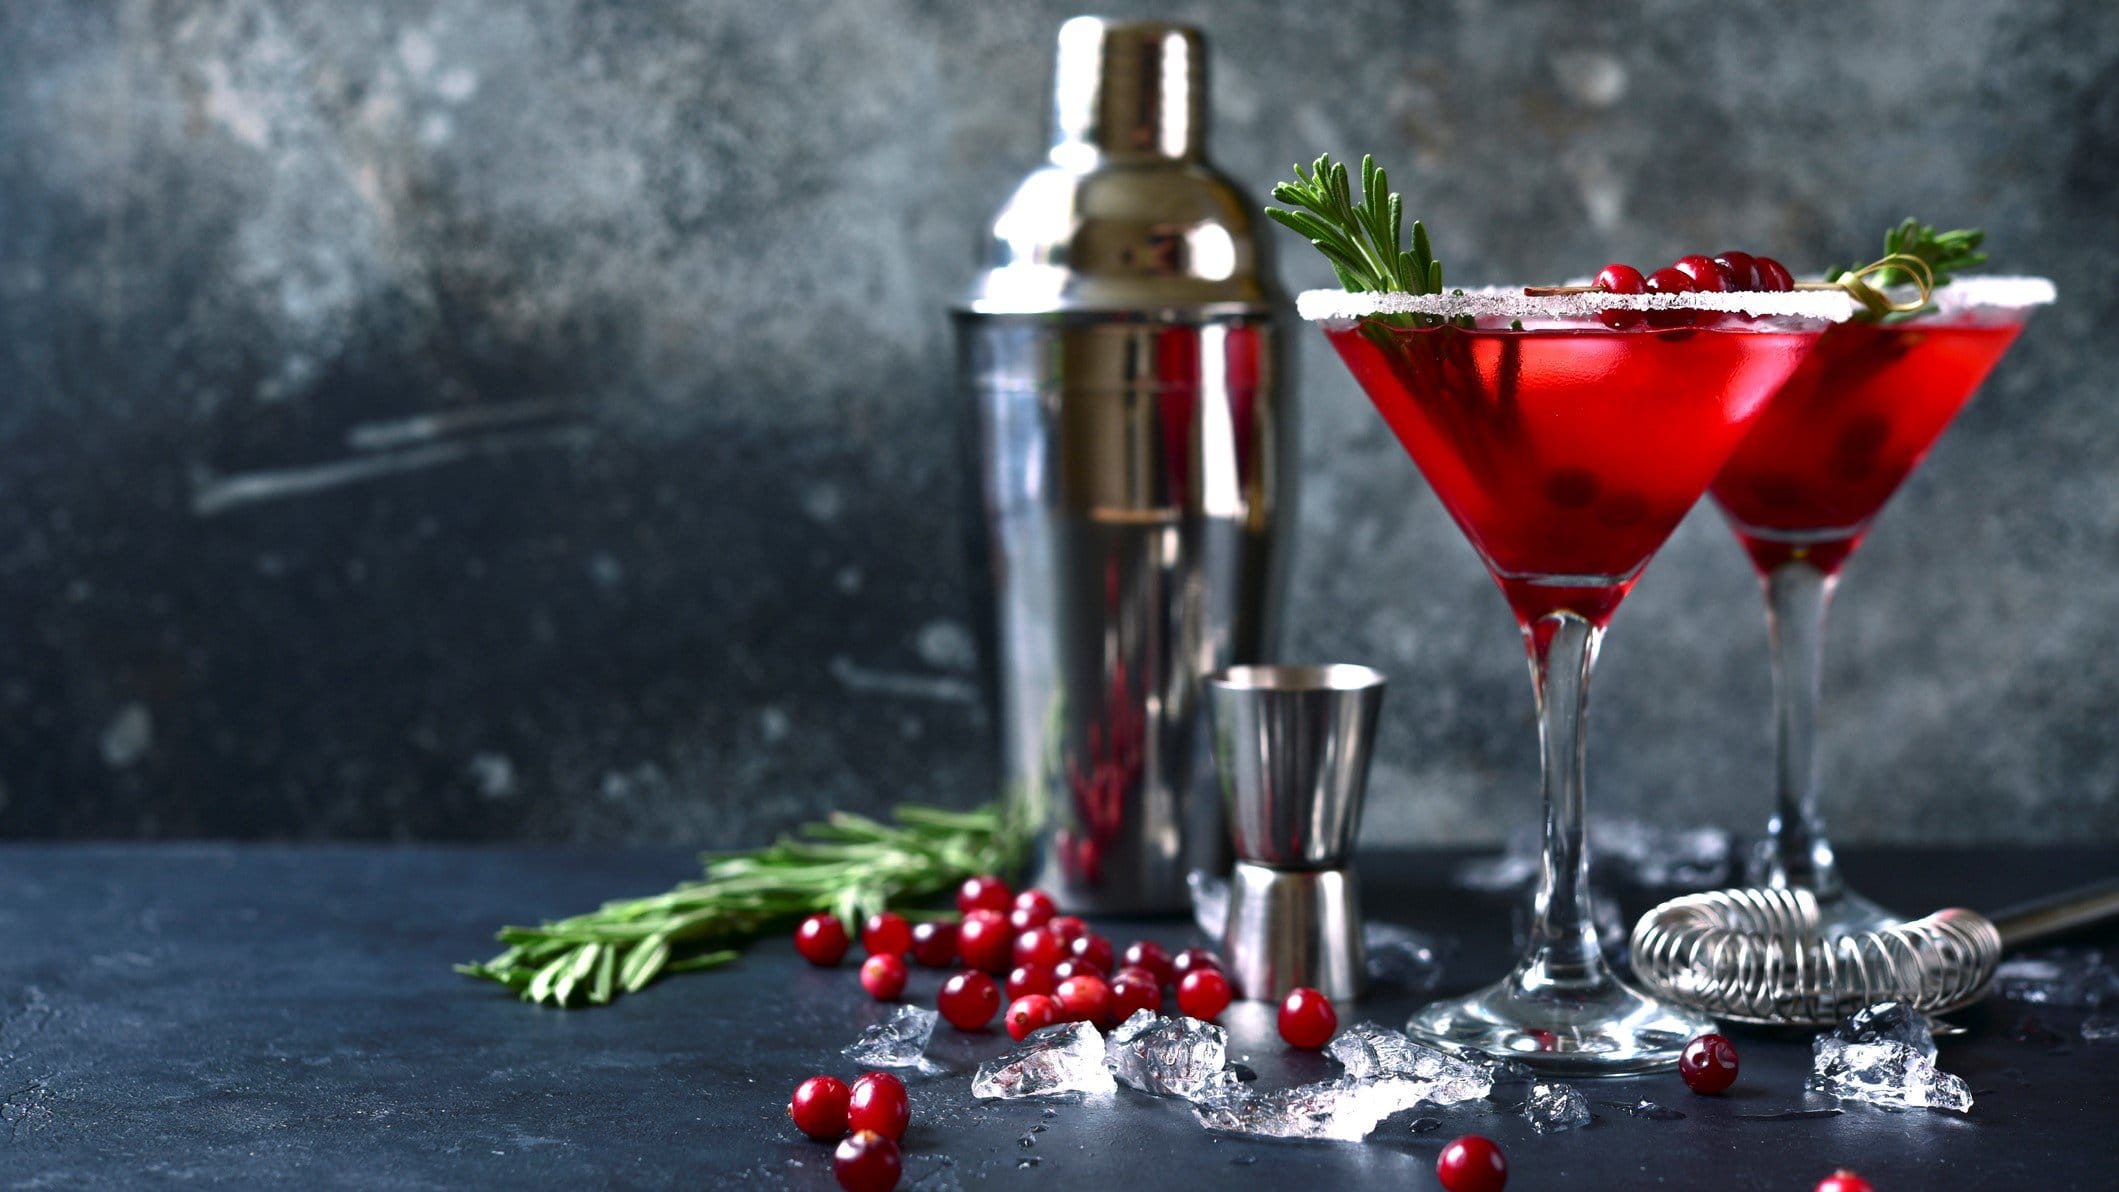 Zwei Christmas-Margarita in Cocktailschale mit Tannenzweig. Im Bild Shaker, Barmaß, Cranberrys und Zweige verteilt. Frontalansicht.